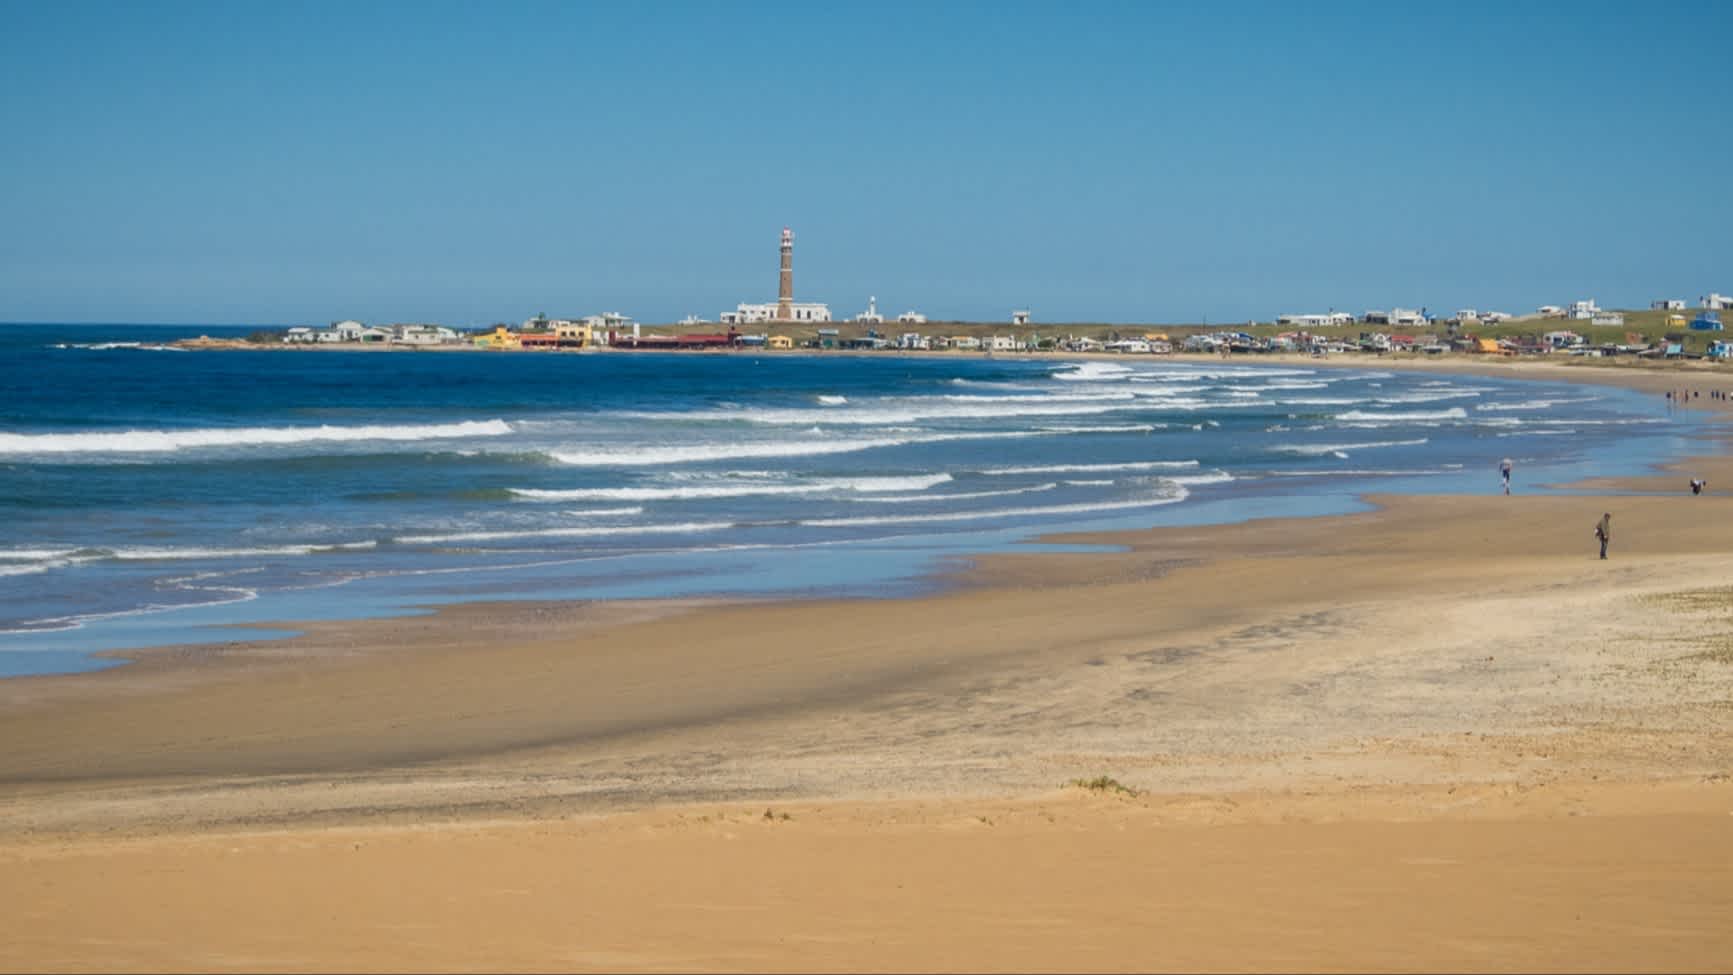 Panoramablick auf den La Calavera Strand in Cabo Polonio, Uruguay mit der Stadt am Küstenrand im Hintergrund.

